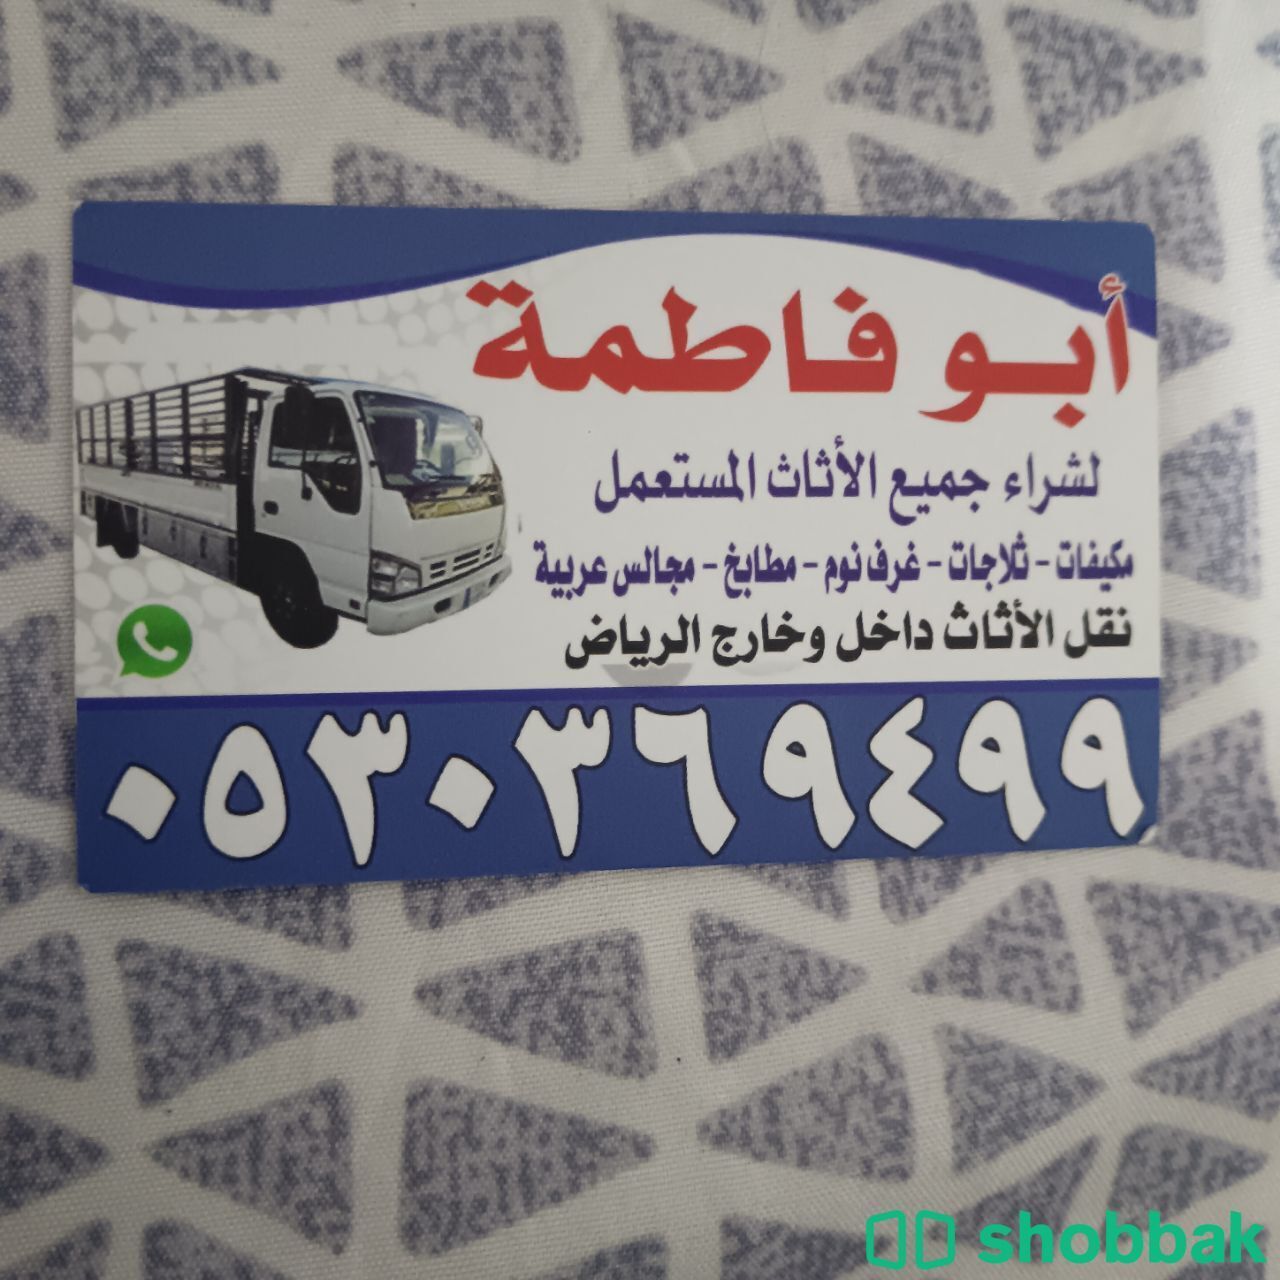 راعي شراء أثاث مستعمل حي النزهة 0530369499  Shobbak Saudi Arabia